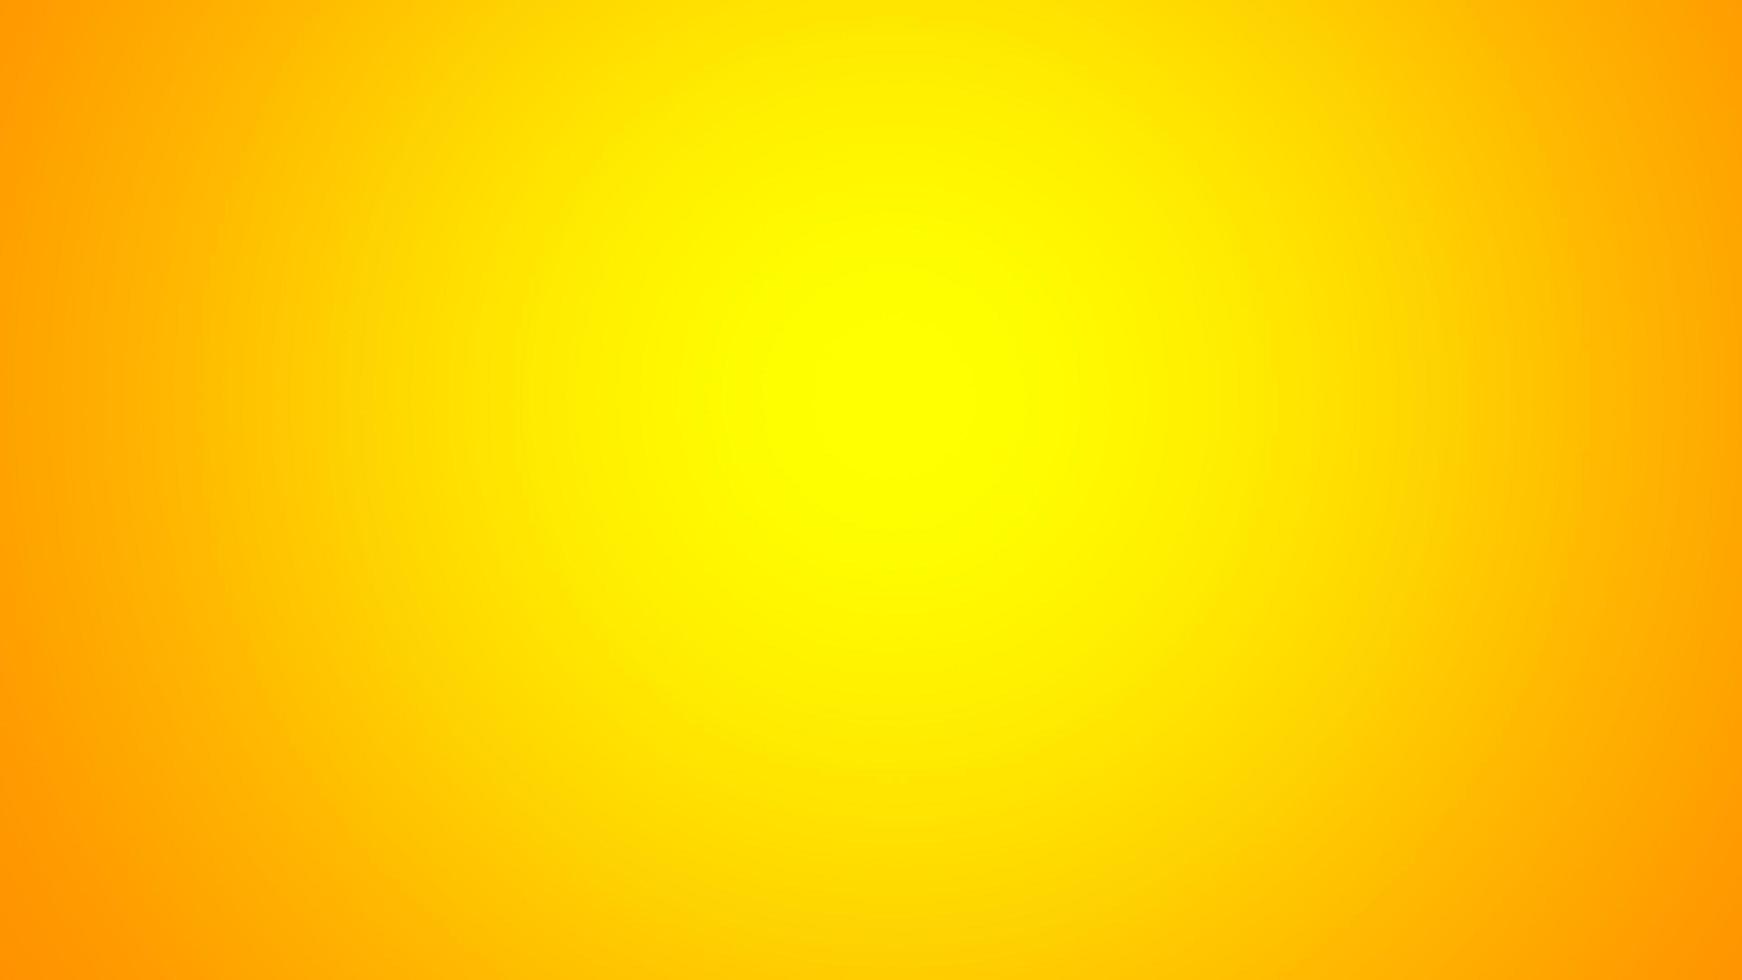 Nền Gradient màu vàng cam abstract được thiết kế với sự phóng khoáng và sáng tạo. Hình ảnh này tạo nên một không gian trừu tượng đầy mê hoặc, sáng tạo và đầy màu sắc. Hãy cùng khám phá và tận hưởng vẻ đẹp của nó.